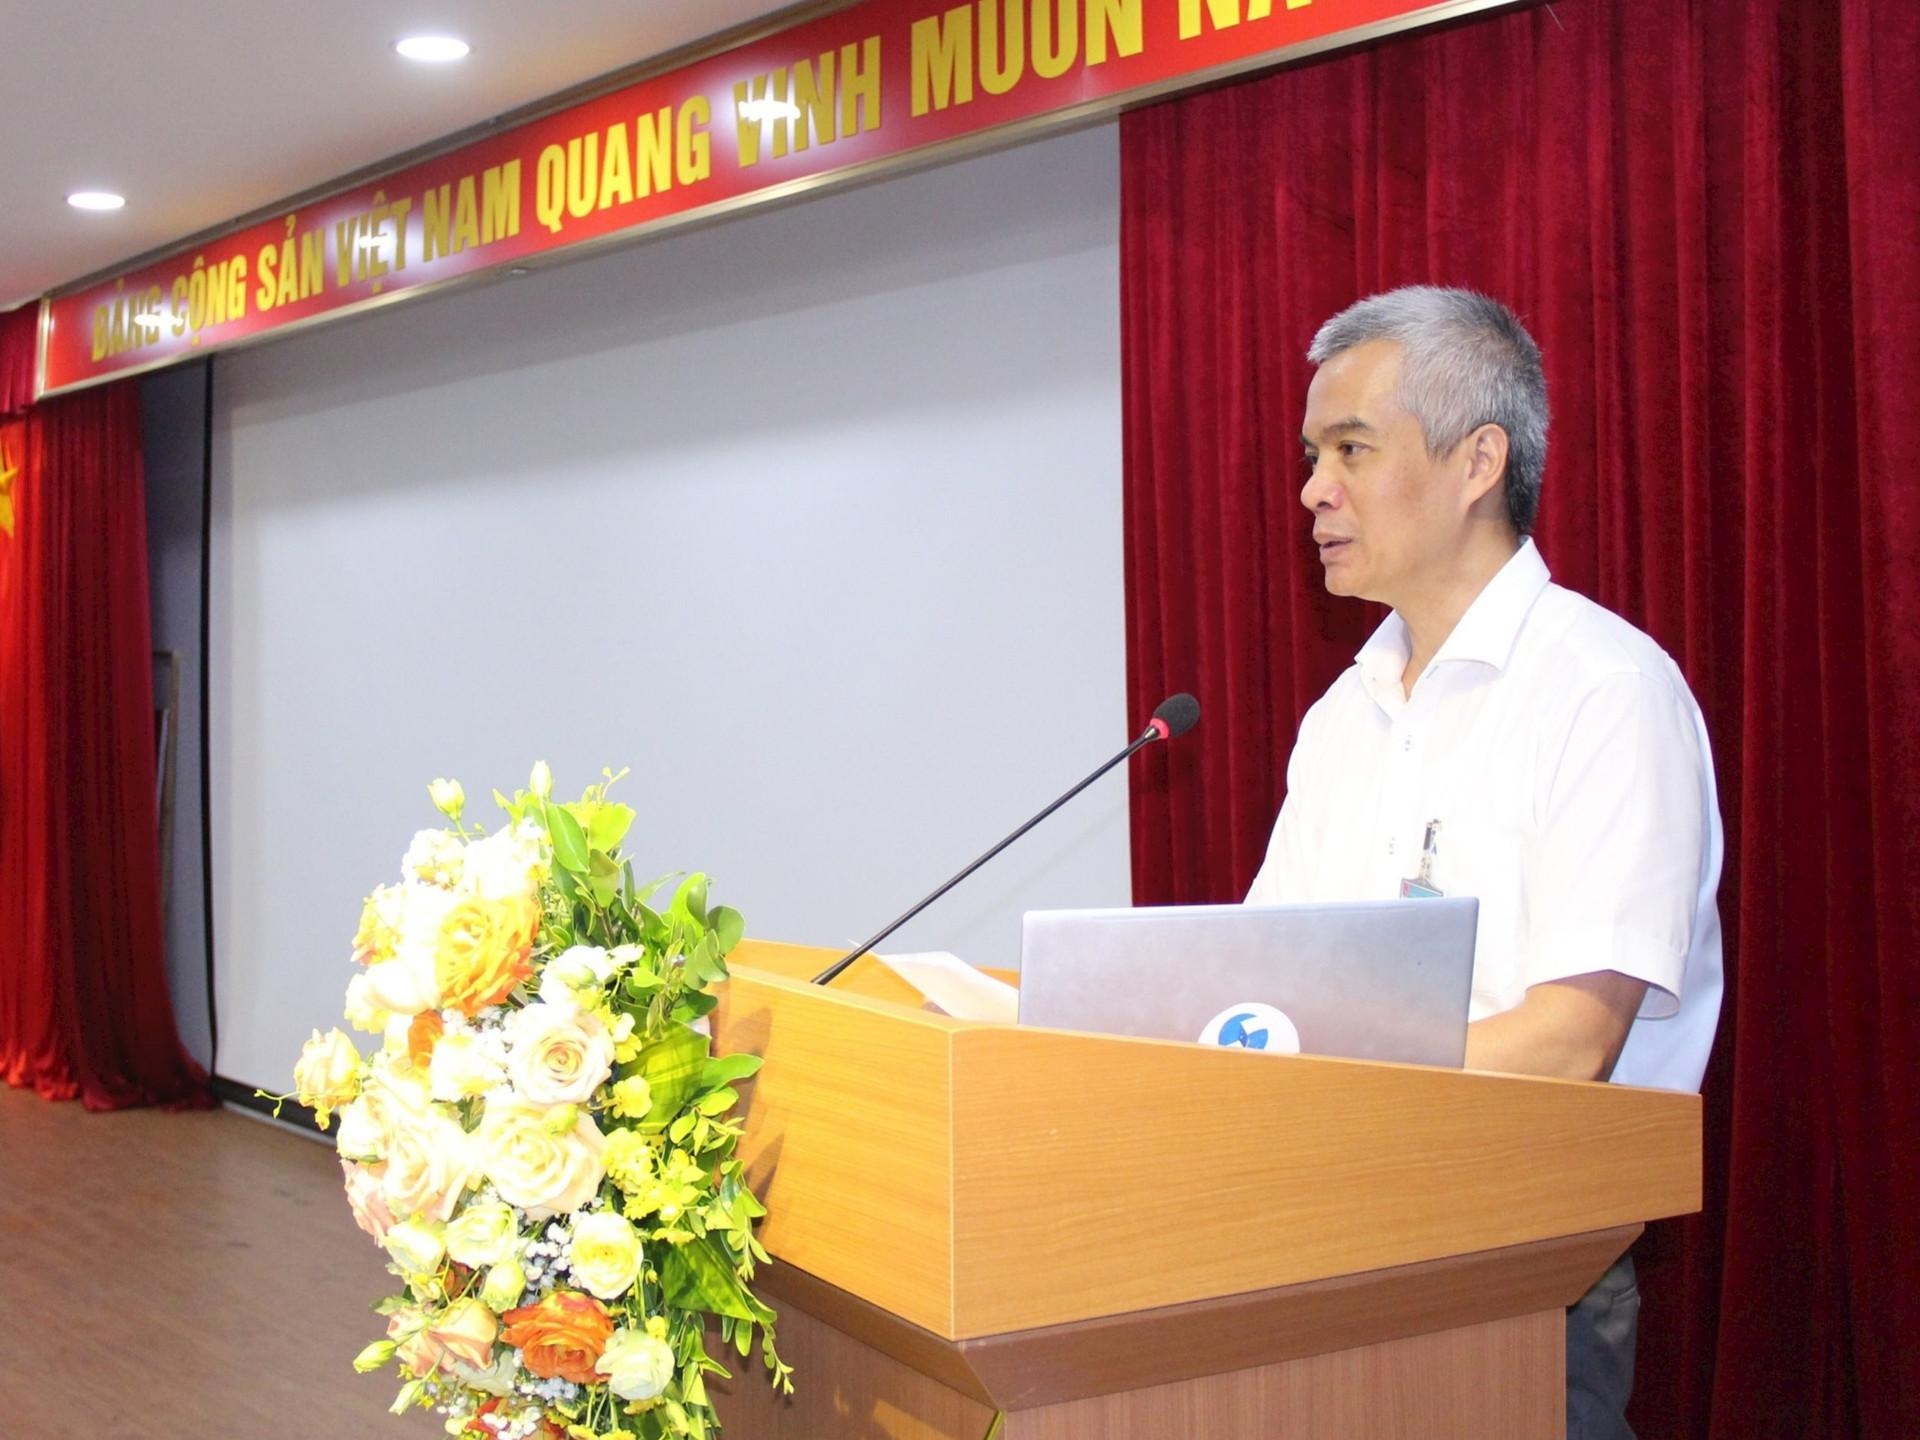 河内市科学技术局局长阮洪山在研讨会上发言。